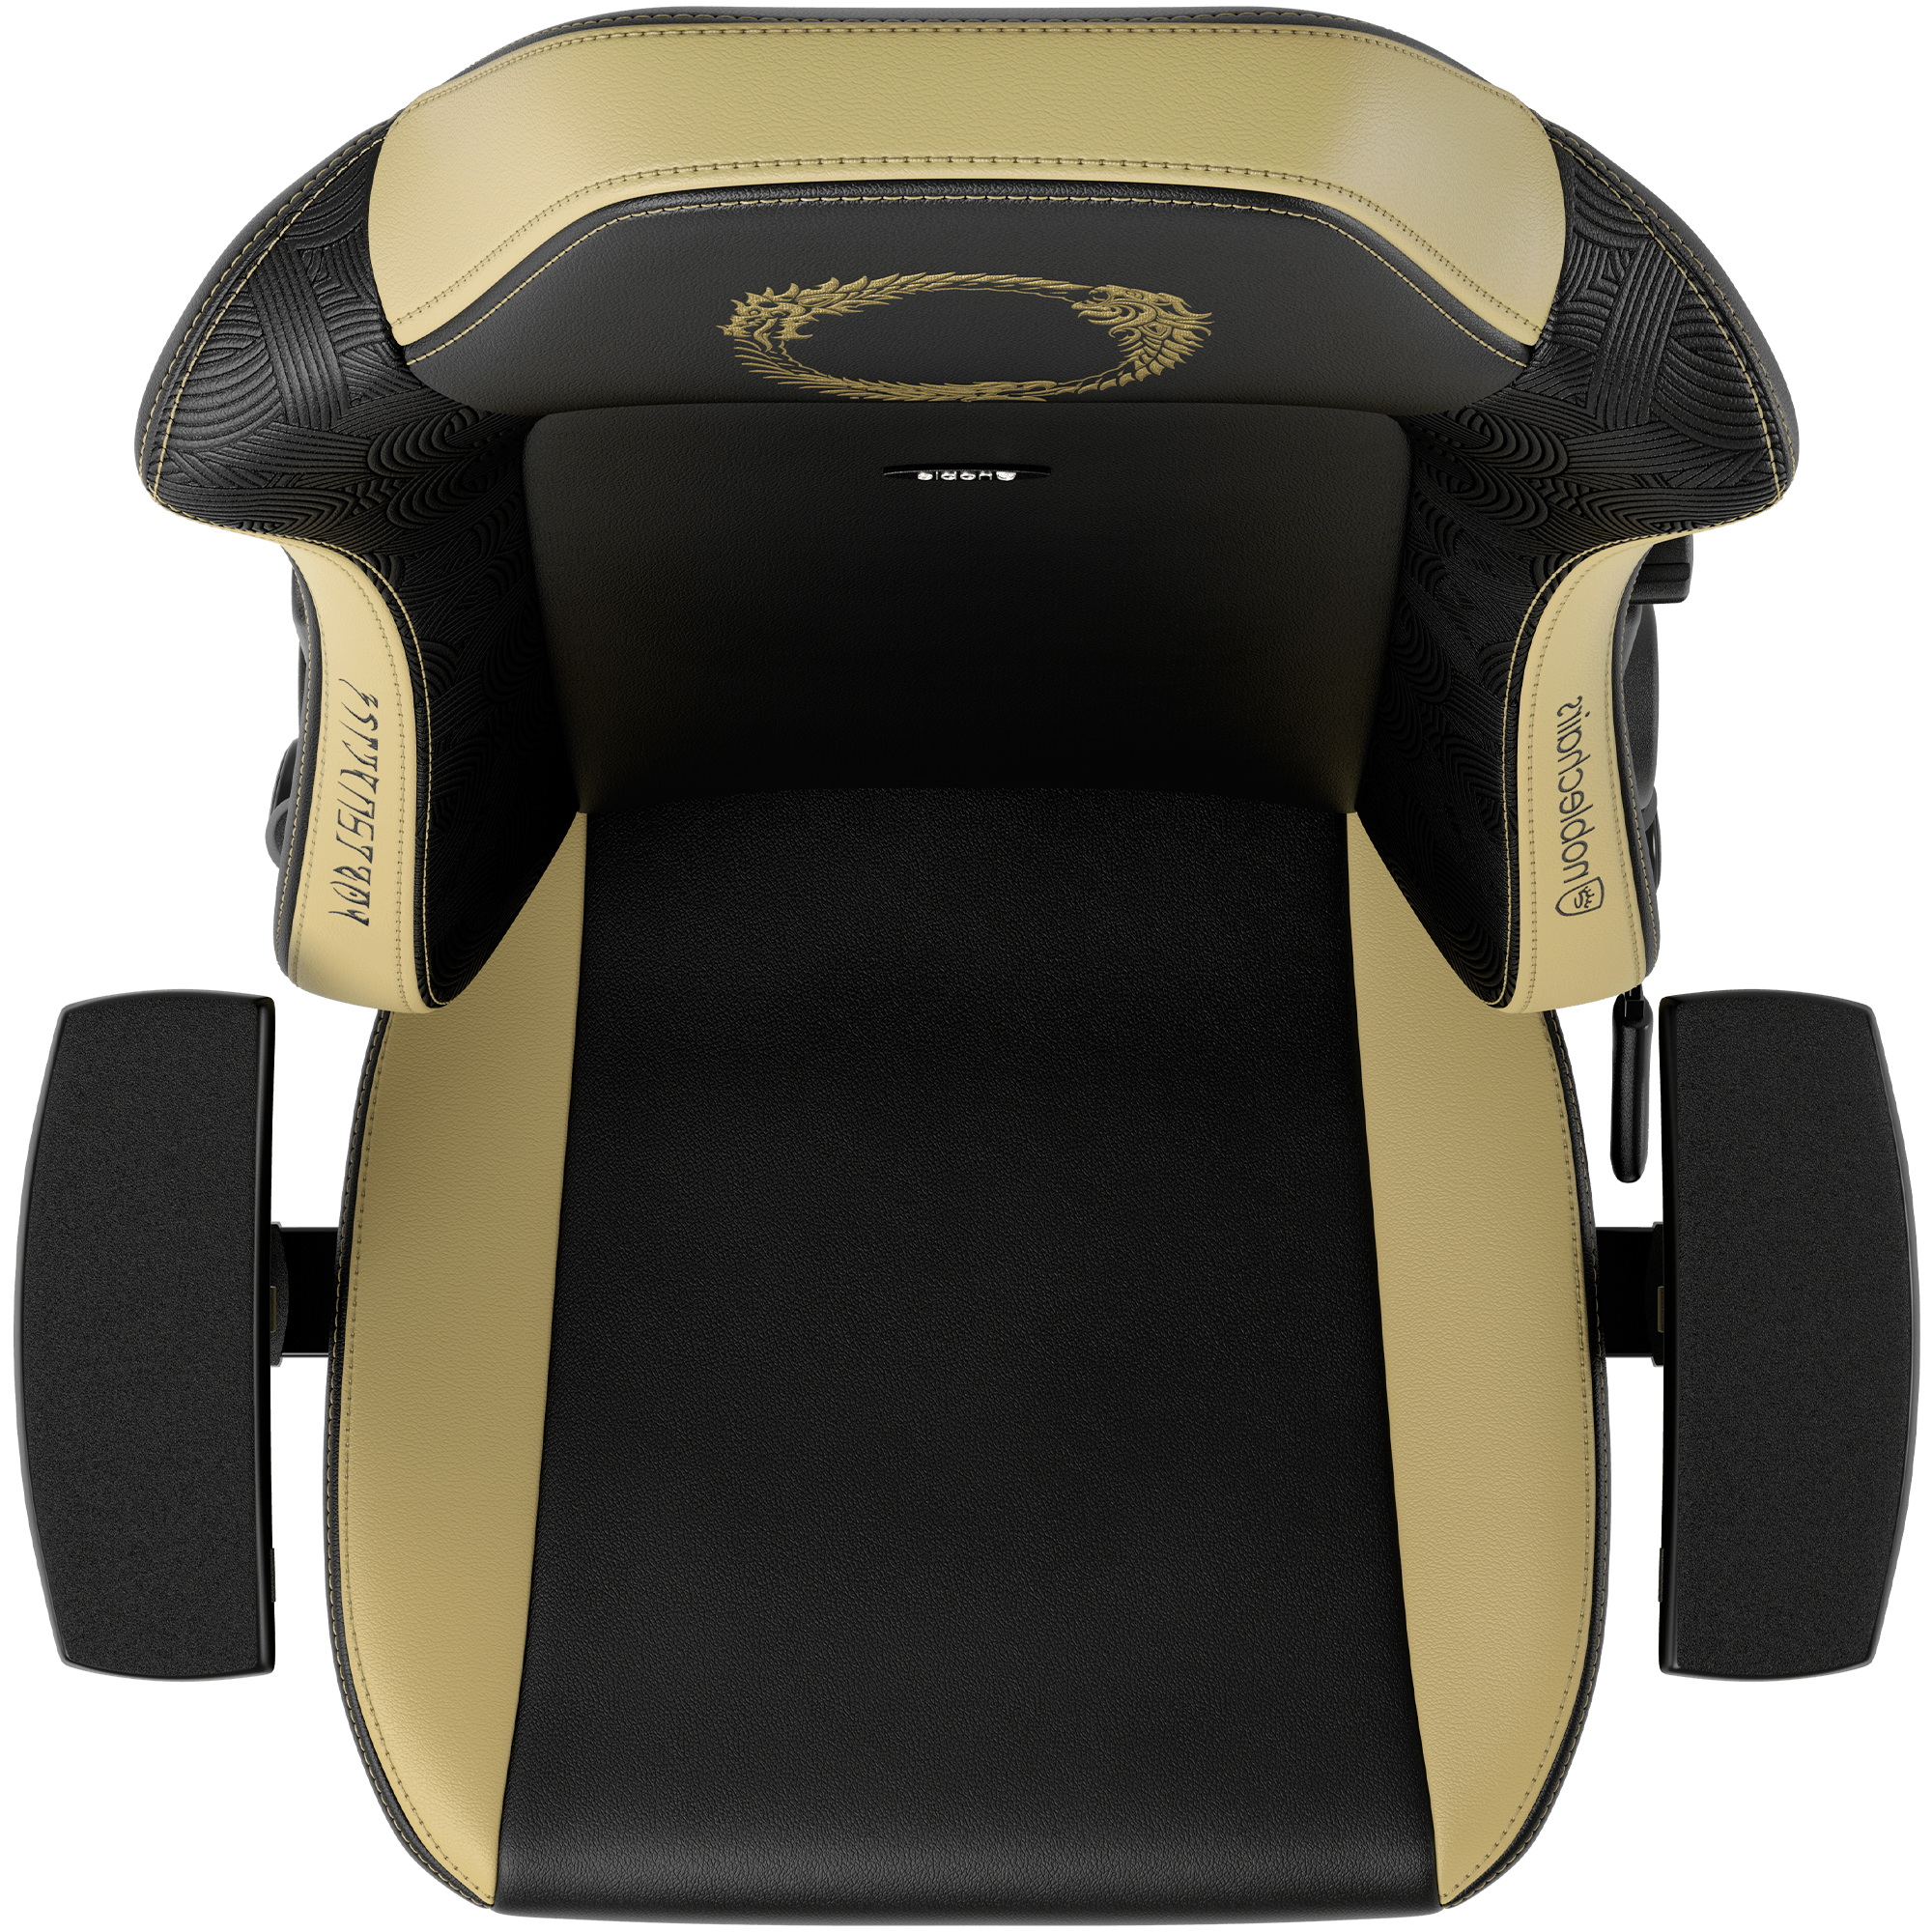 Gaming chair movable armrests Bethesda Elder Scrolls Online vegan pu leather